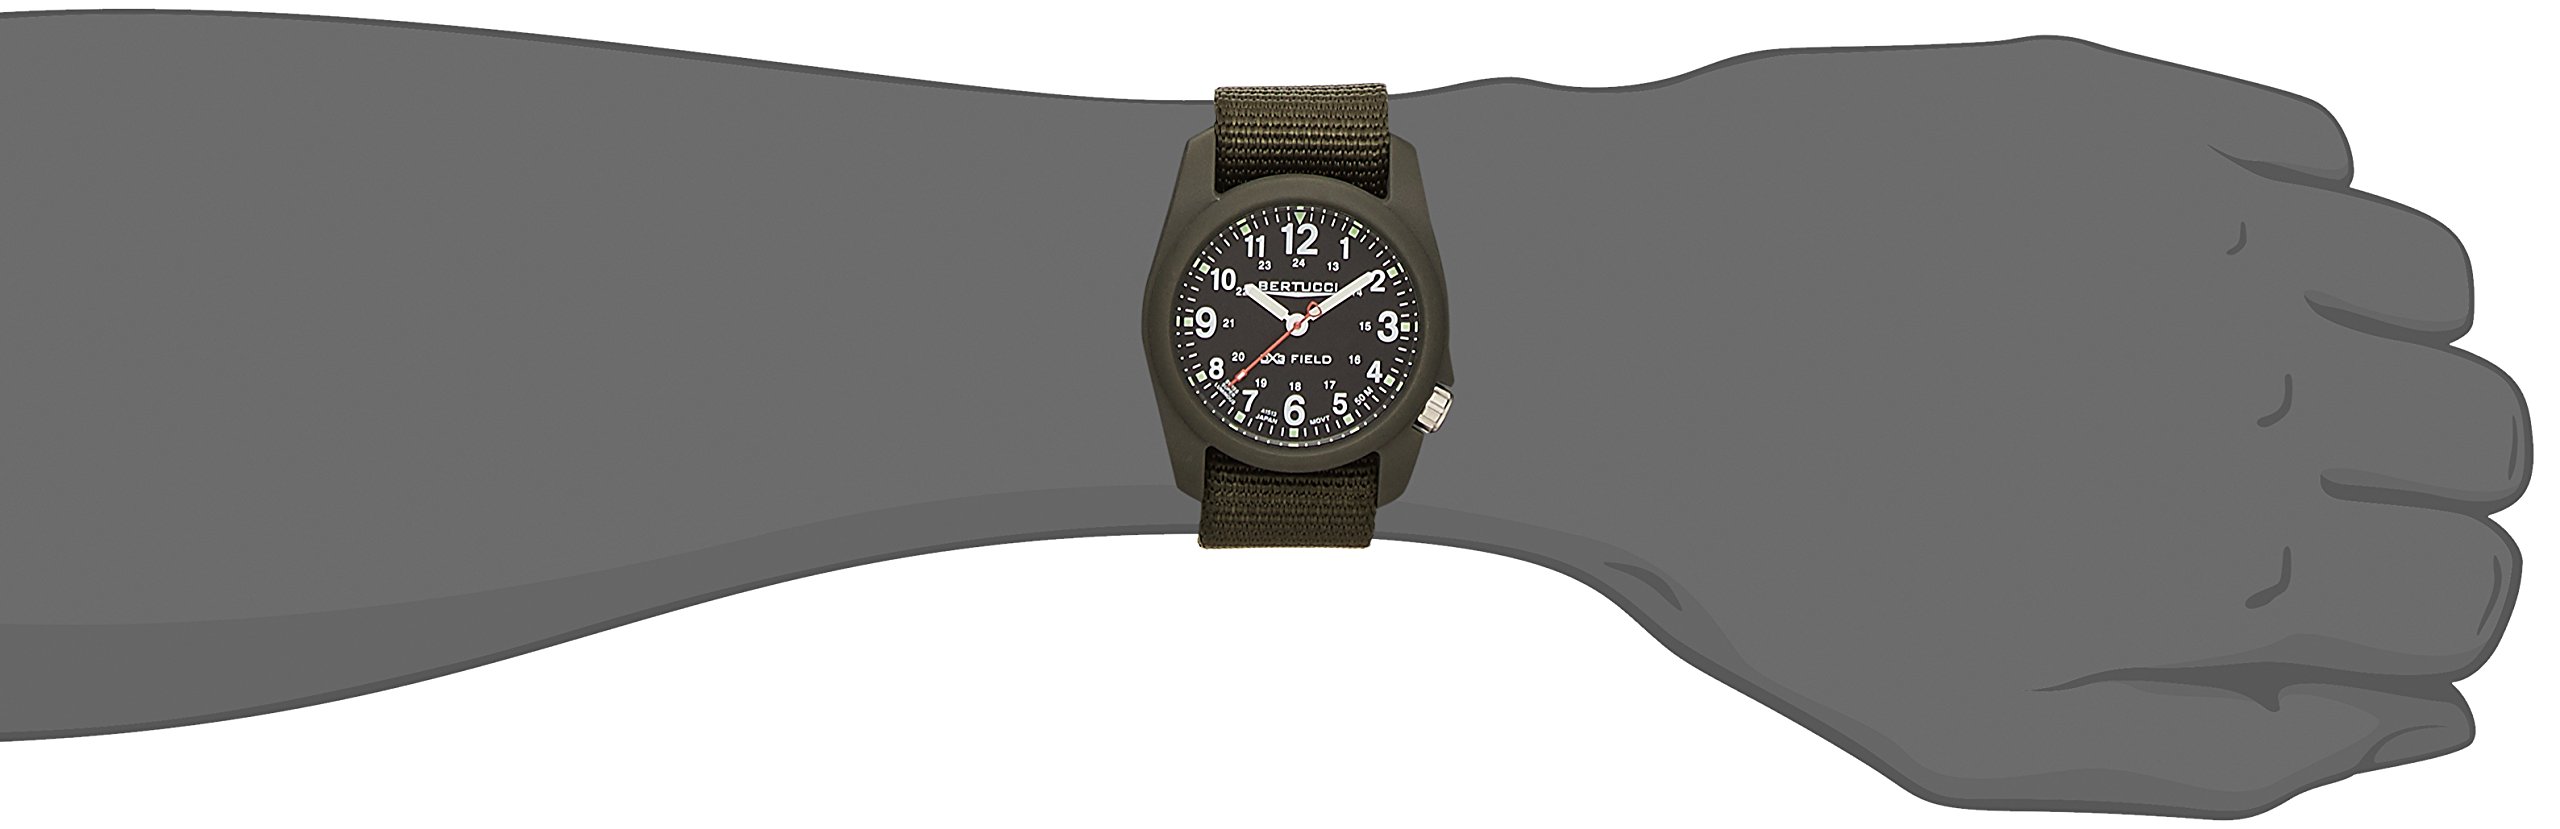 Bertucci DX3 Men’s Field Watch | Defender Olive Band | Swiss Super Luminous Technology | Innovative Design, Durable Build, Light Weight Comfort | 11026